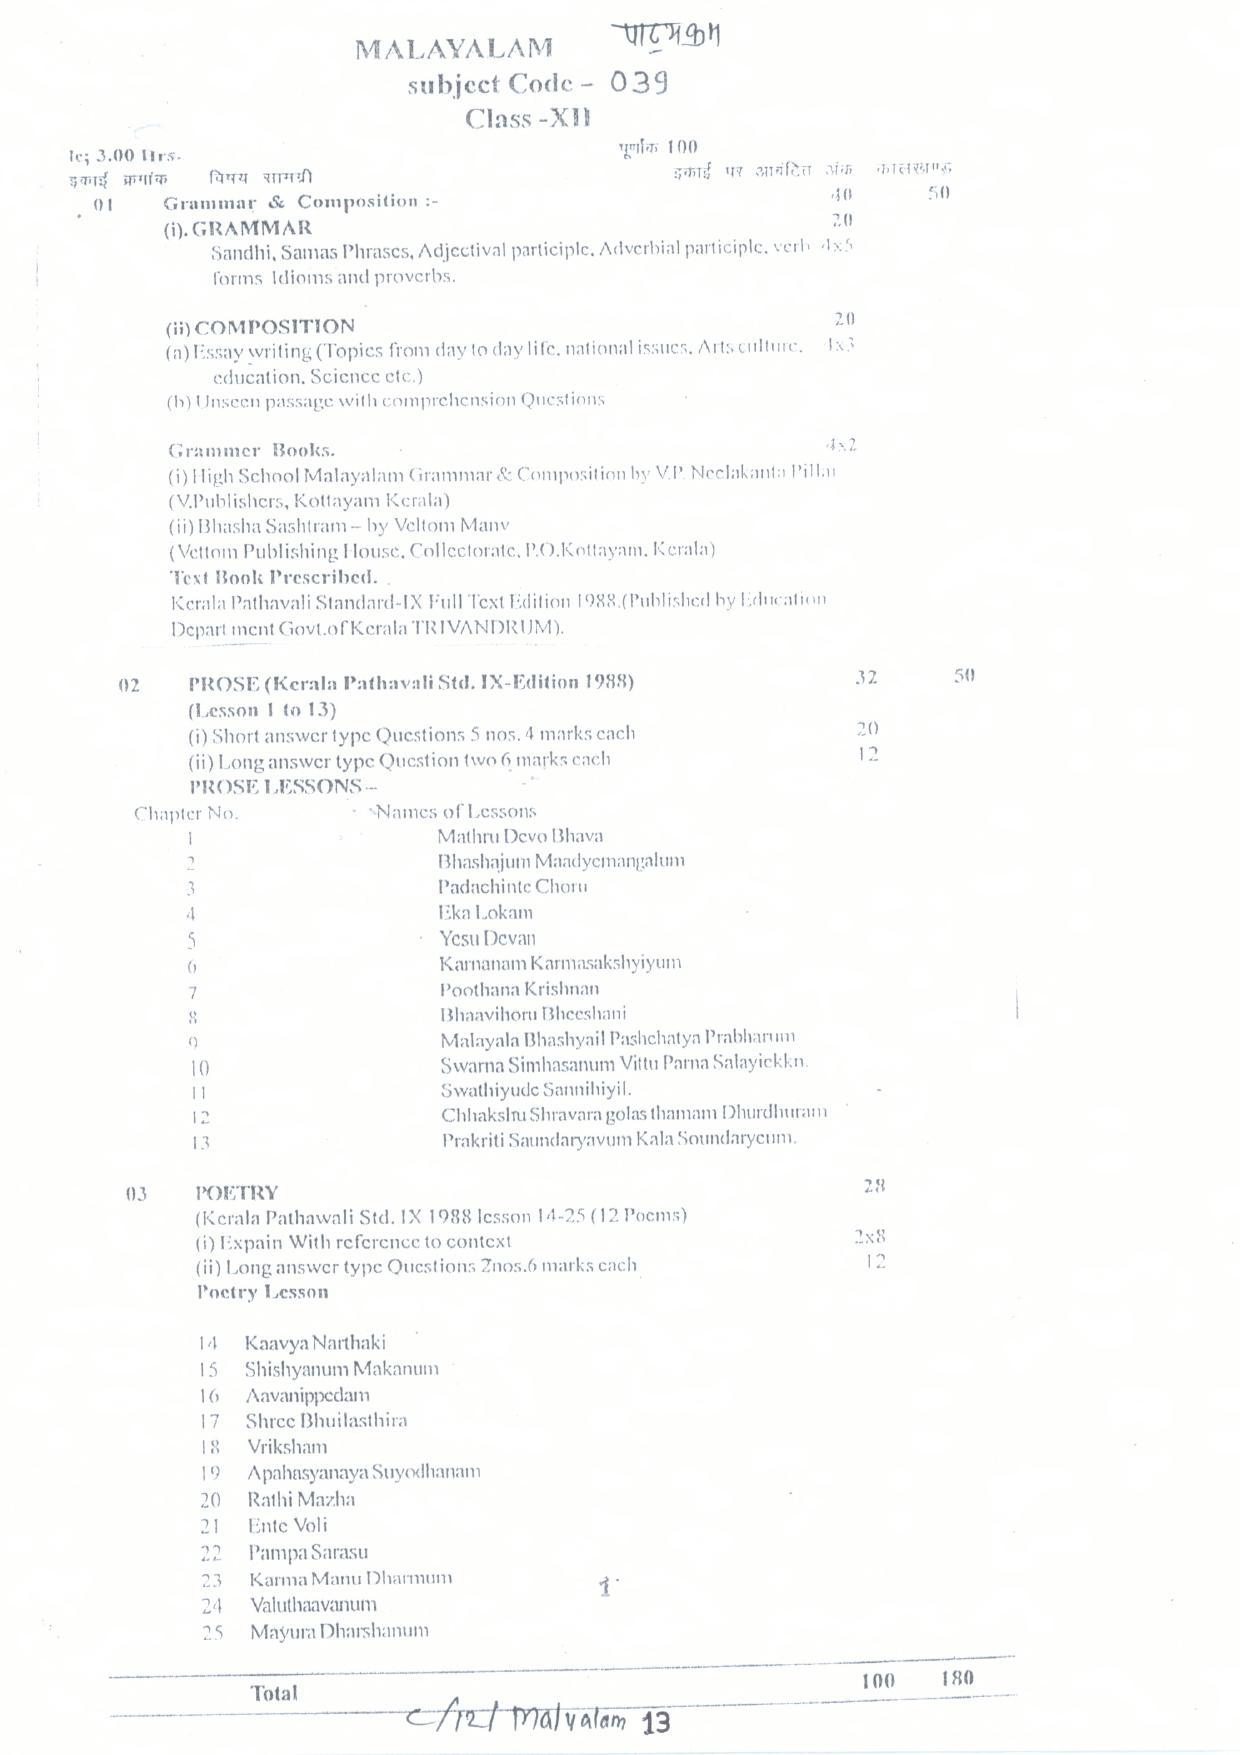 CGBSE Class 12th Syllabus 2021-2022 - Malayalam - Page 1